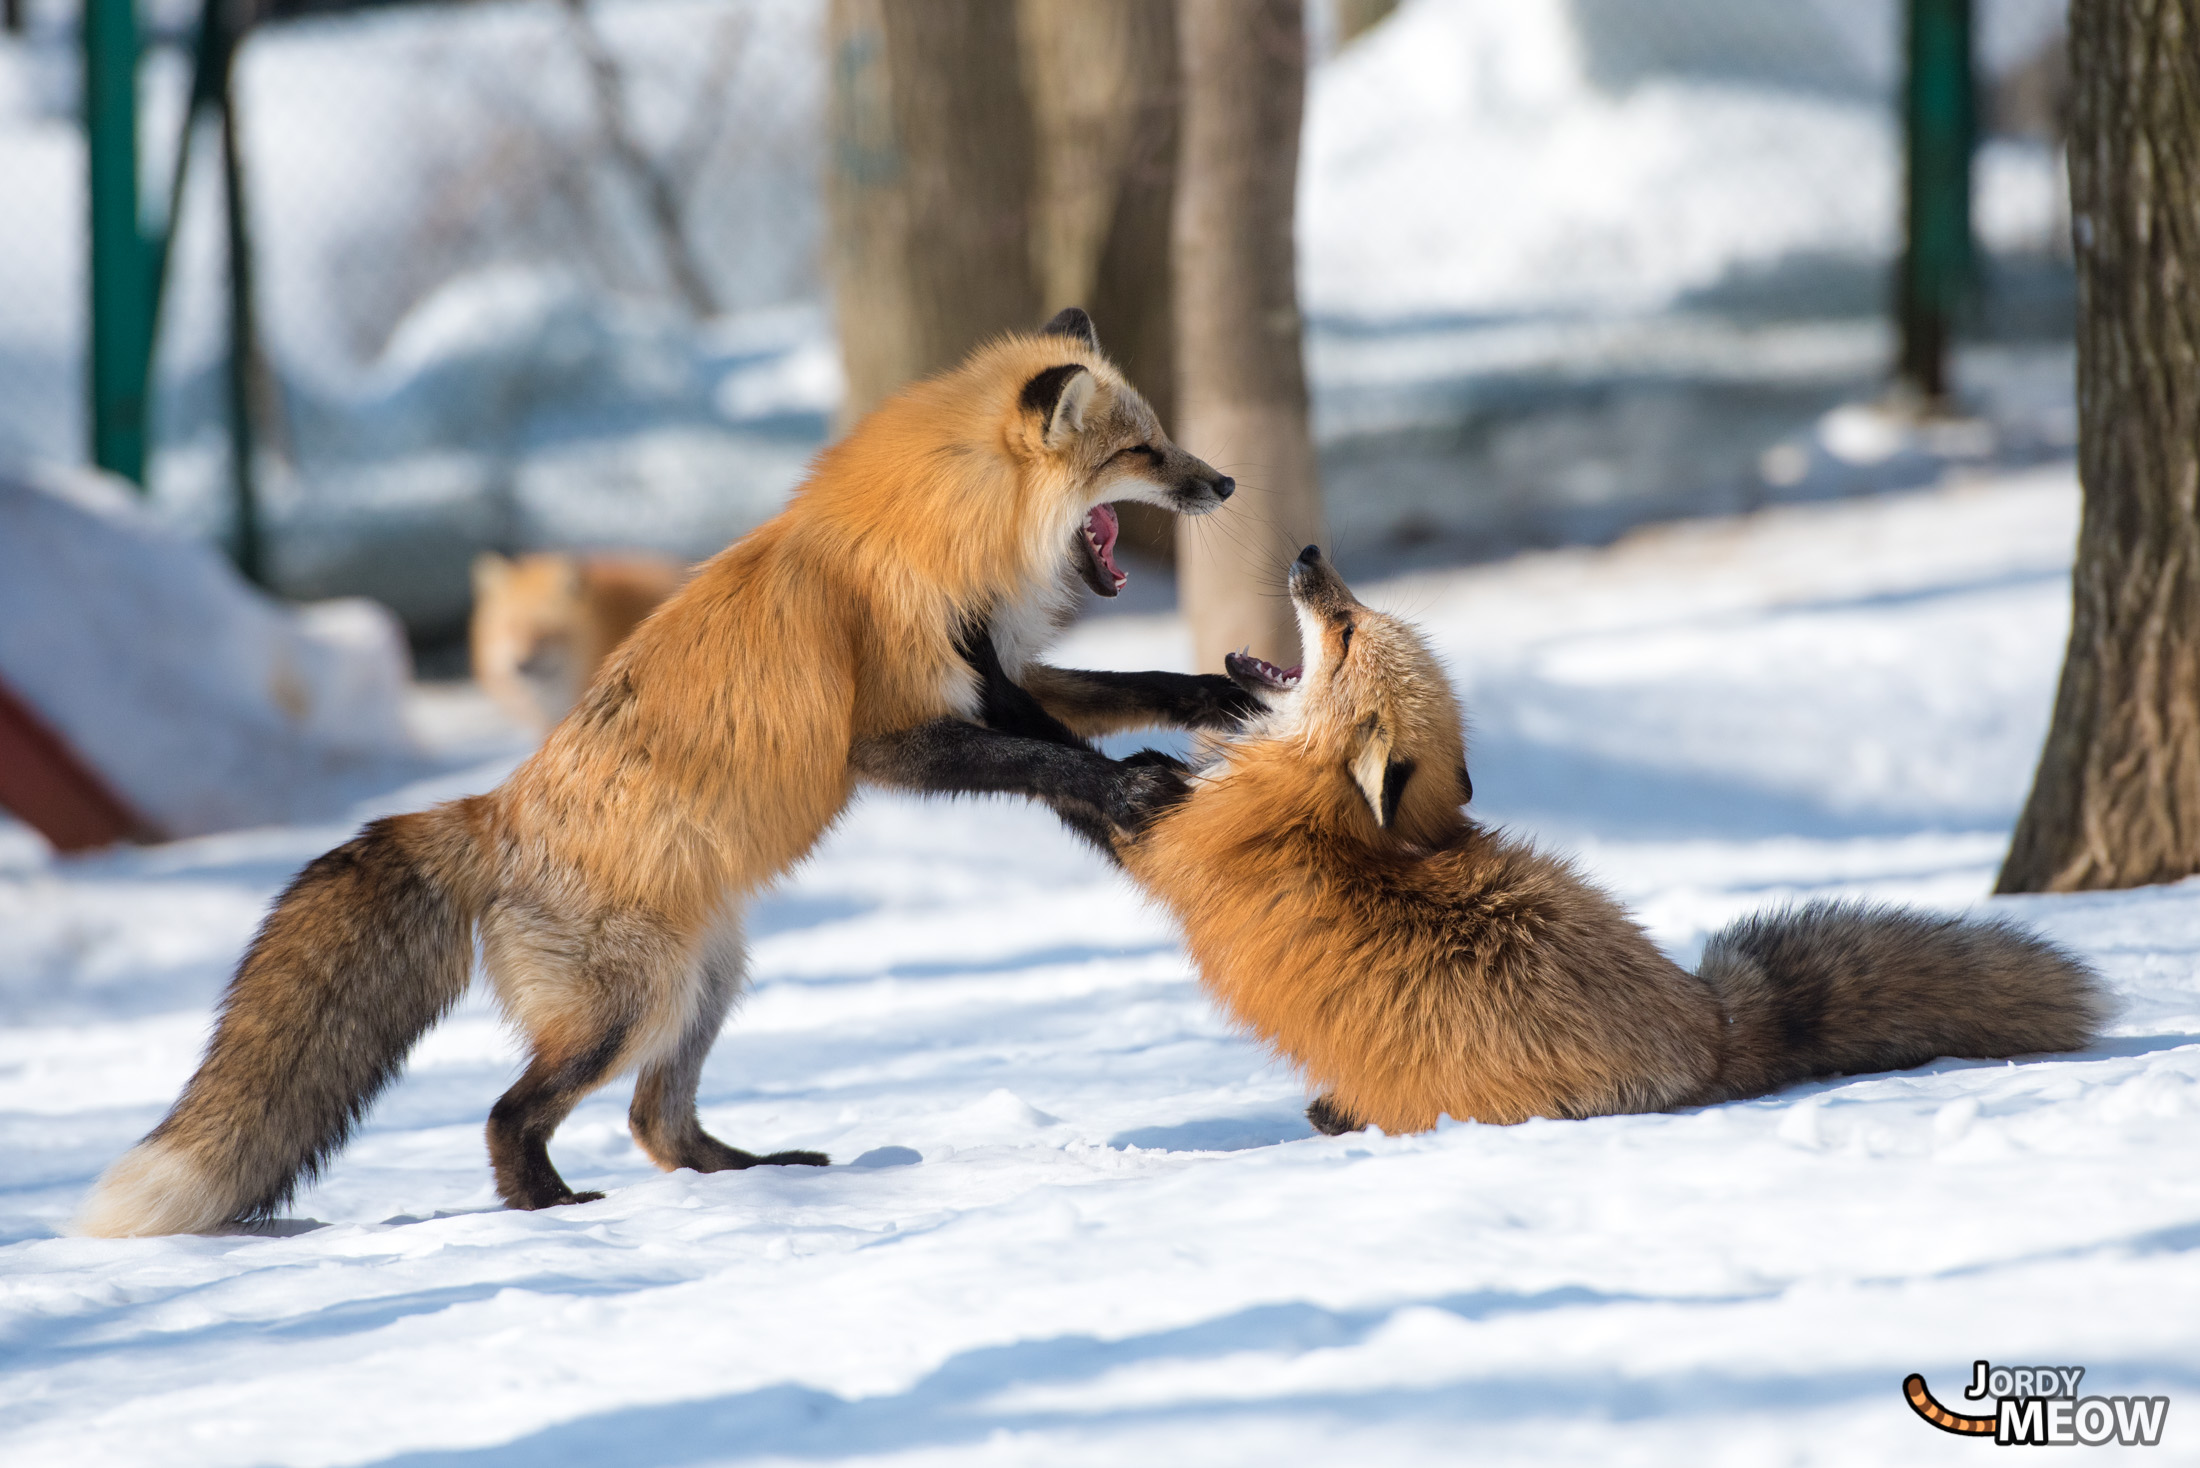 Enchanting snow foxes playing in Miyagis winter wonderland.